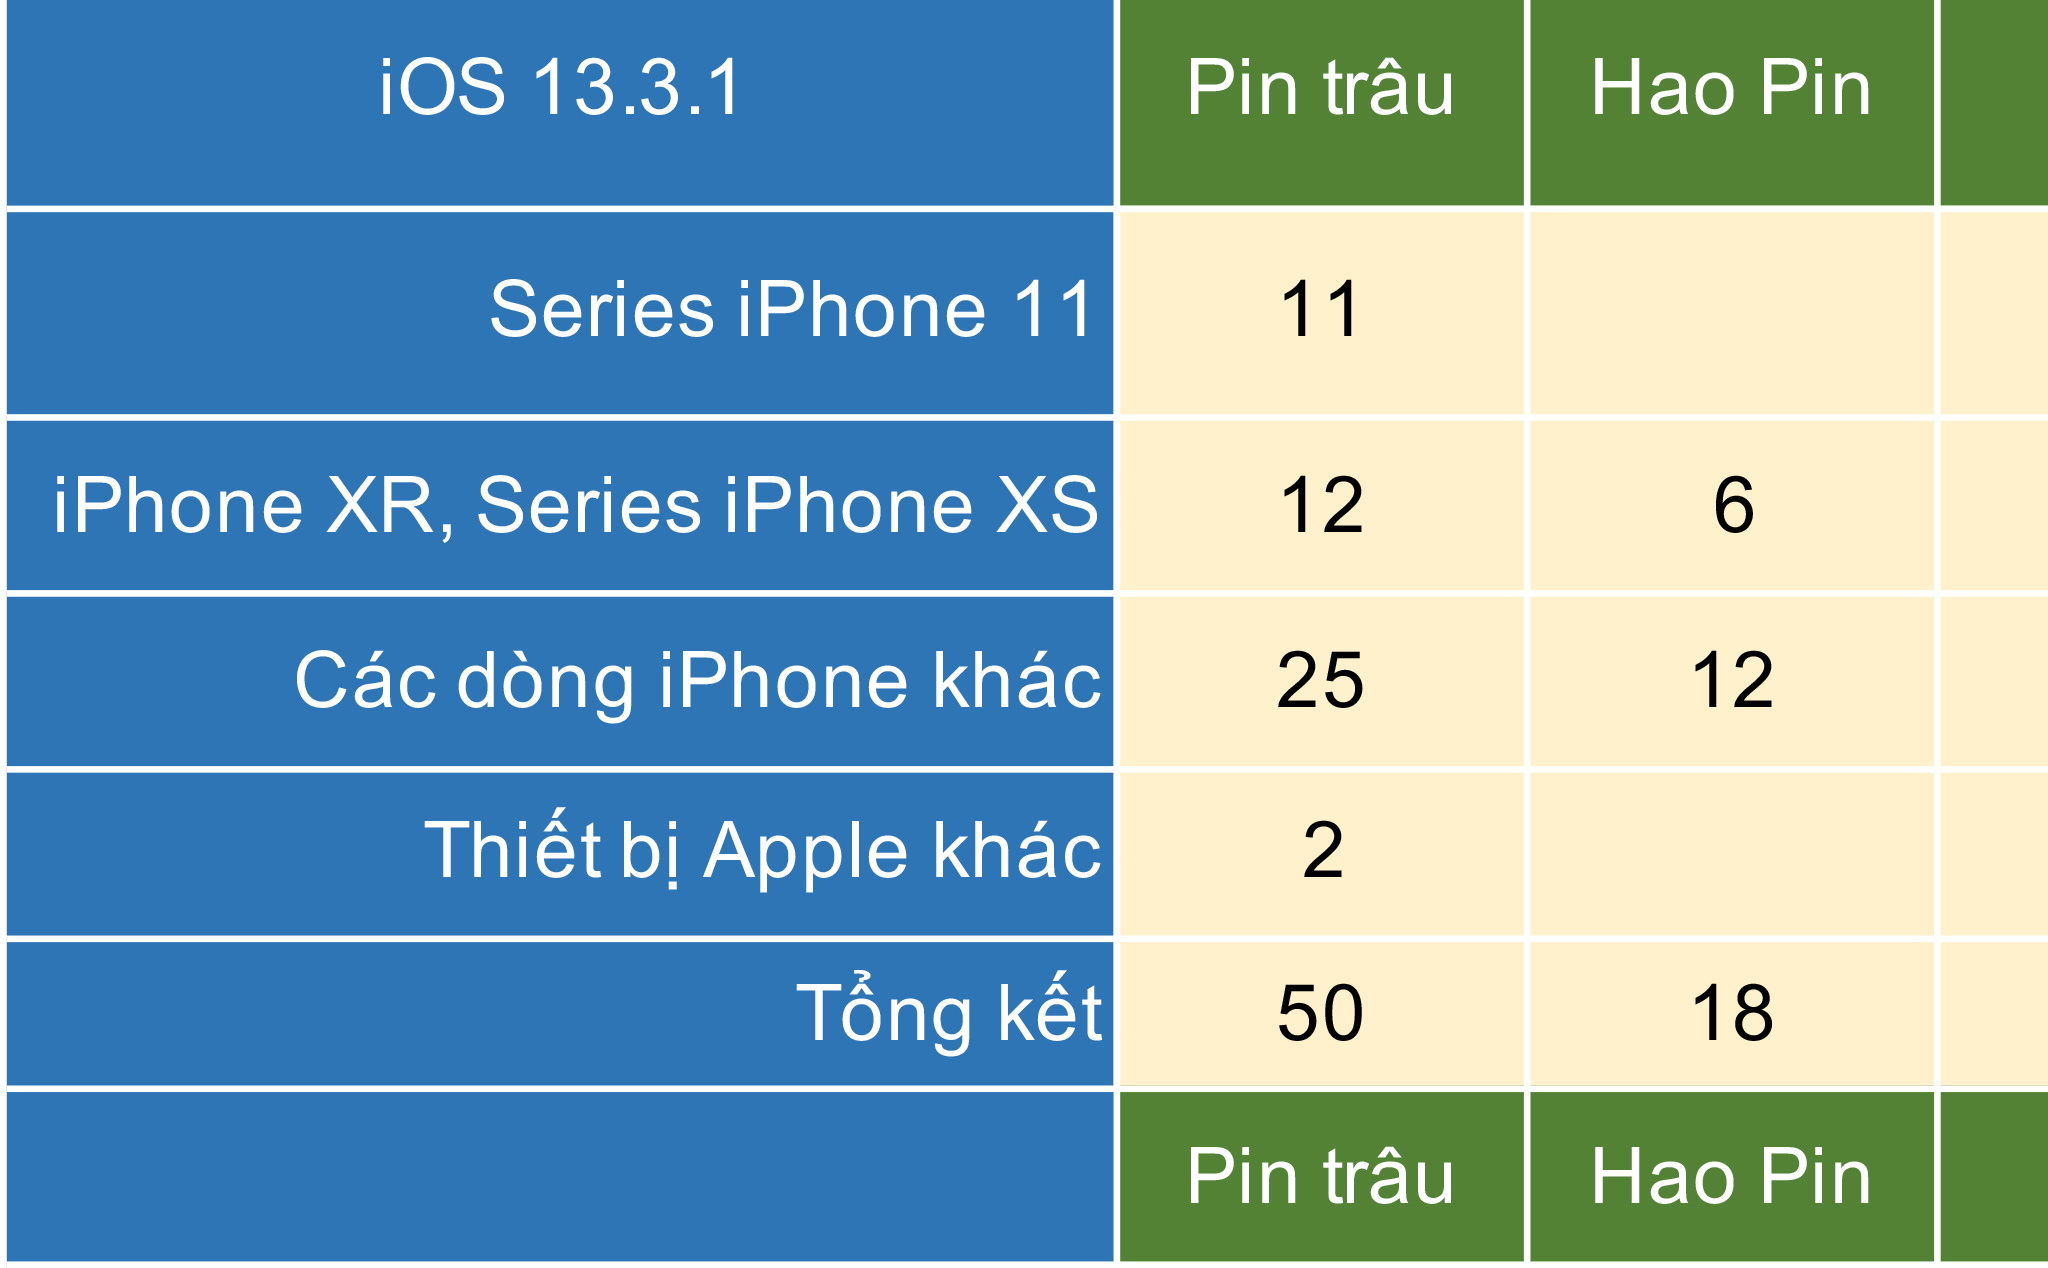 Tổng hợp ý kiến của anh em về iOS 13.3.1: Pin trâu và hài lòng